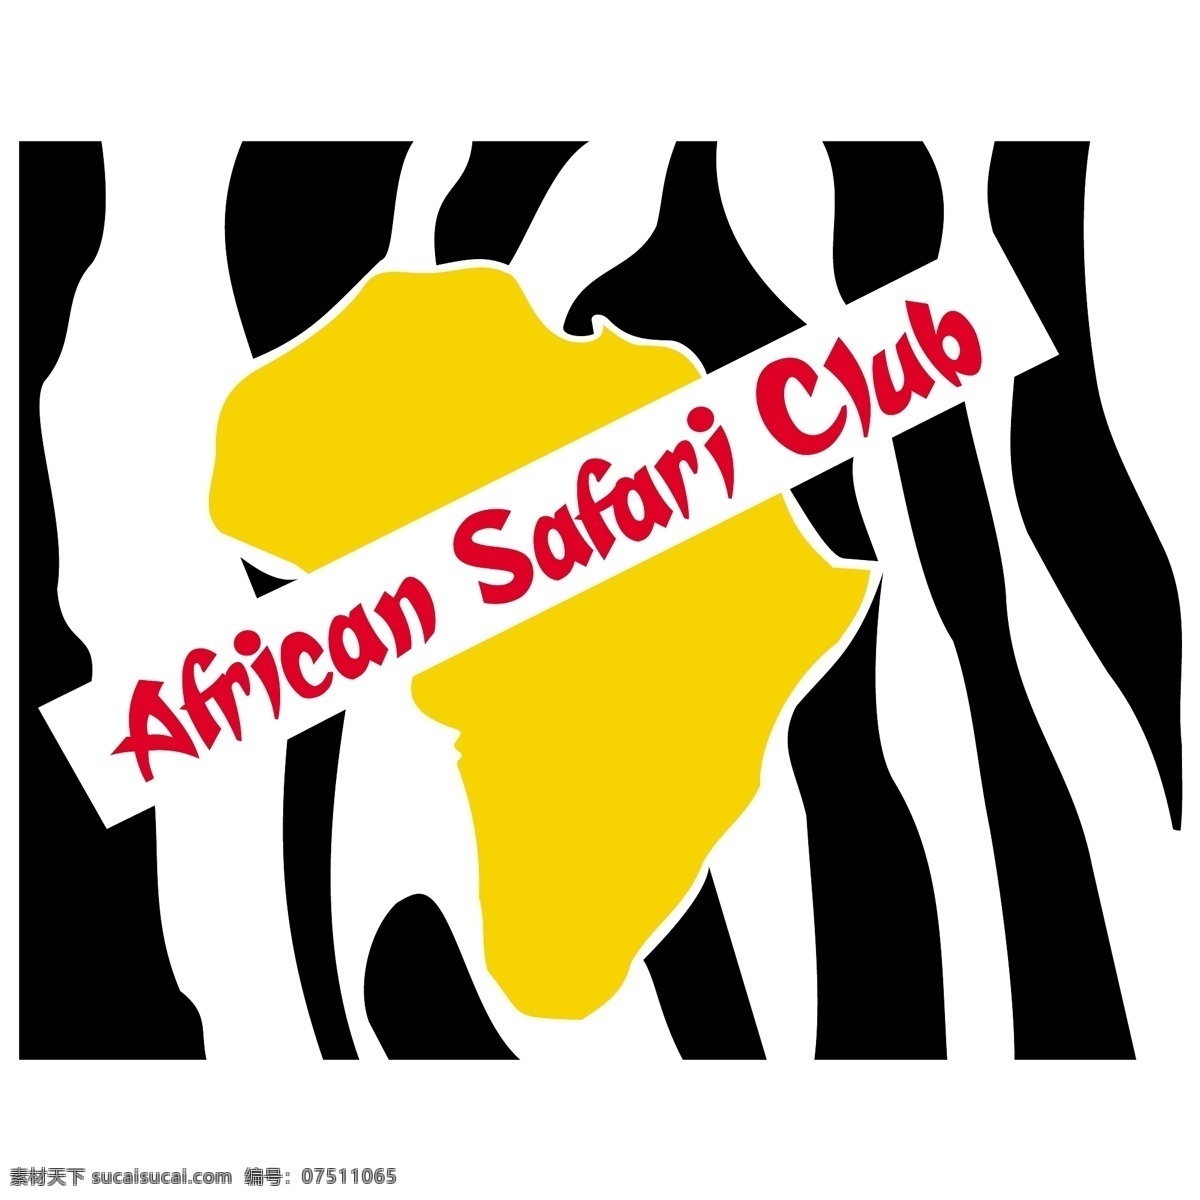 非洲 俱乐部 非洲狩猎 狩猎 狩猎俱乐部 野生 动物园 矢量 免费 之旅 动物 性质 大象 向量 矢量图 建筑家居